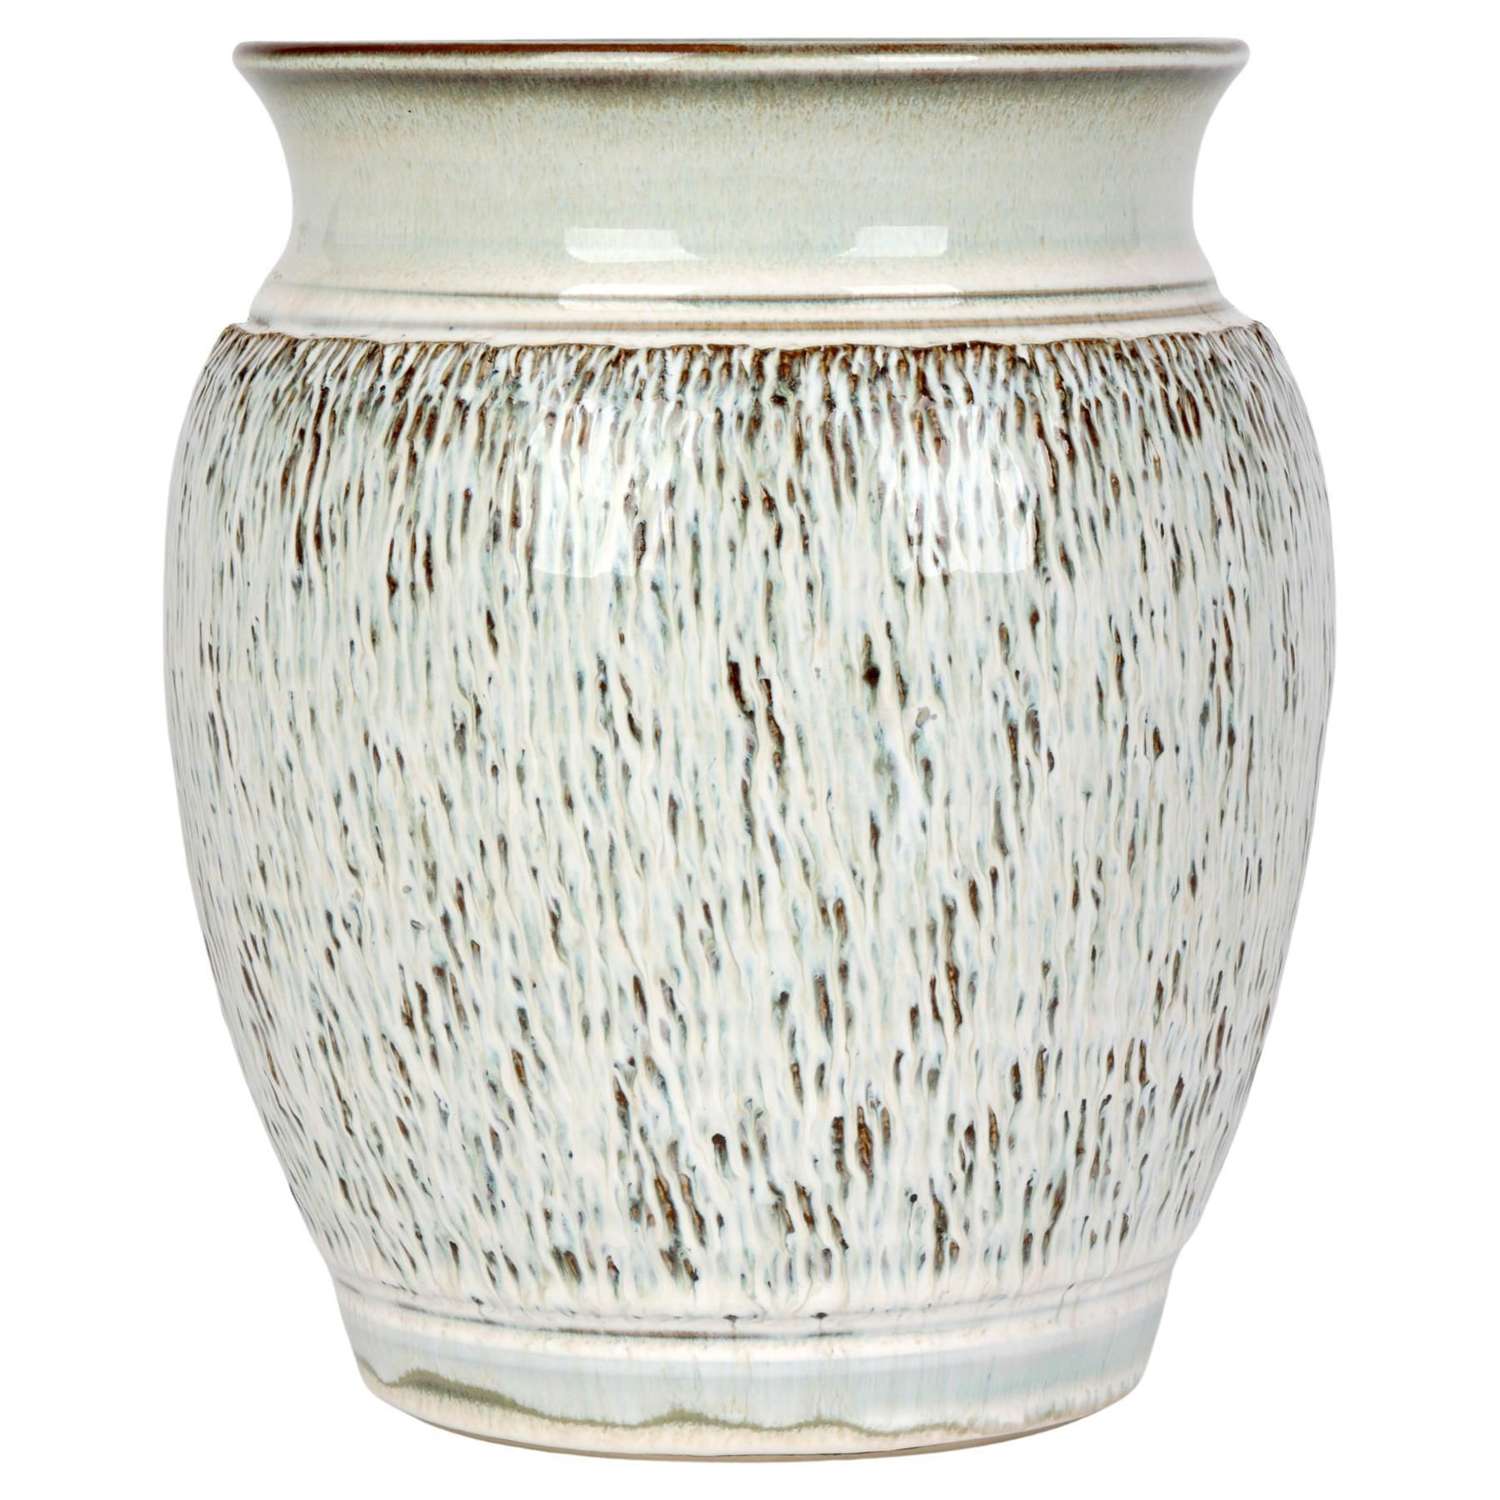 Bauhaus Inspired German Stoneware Vase